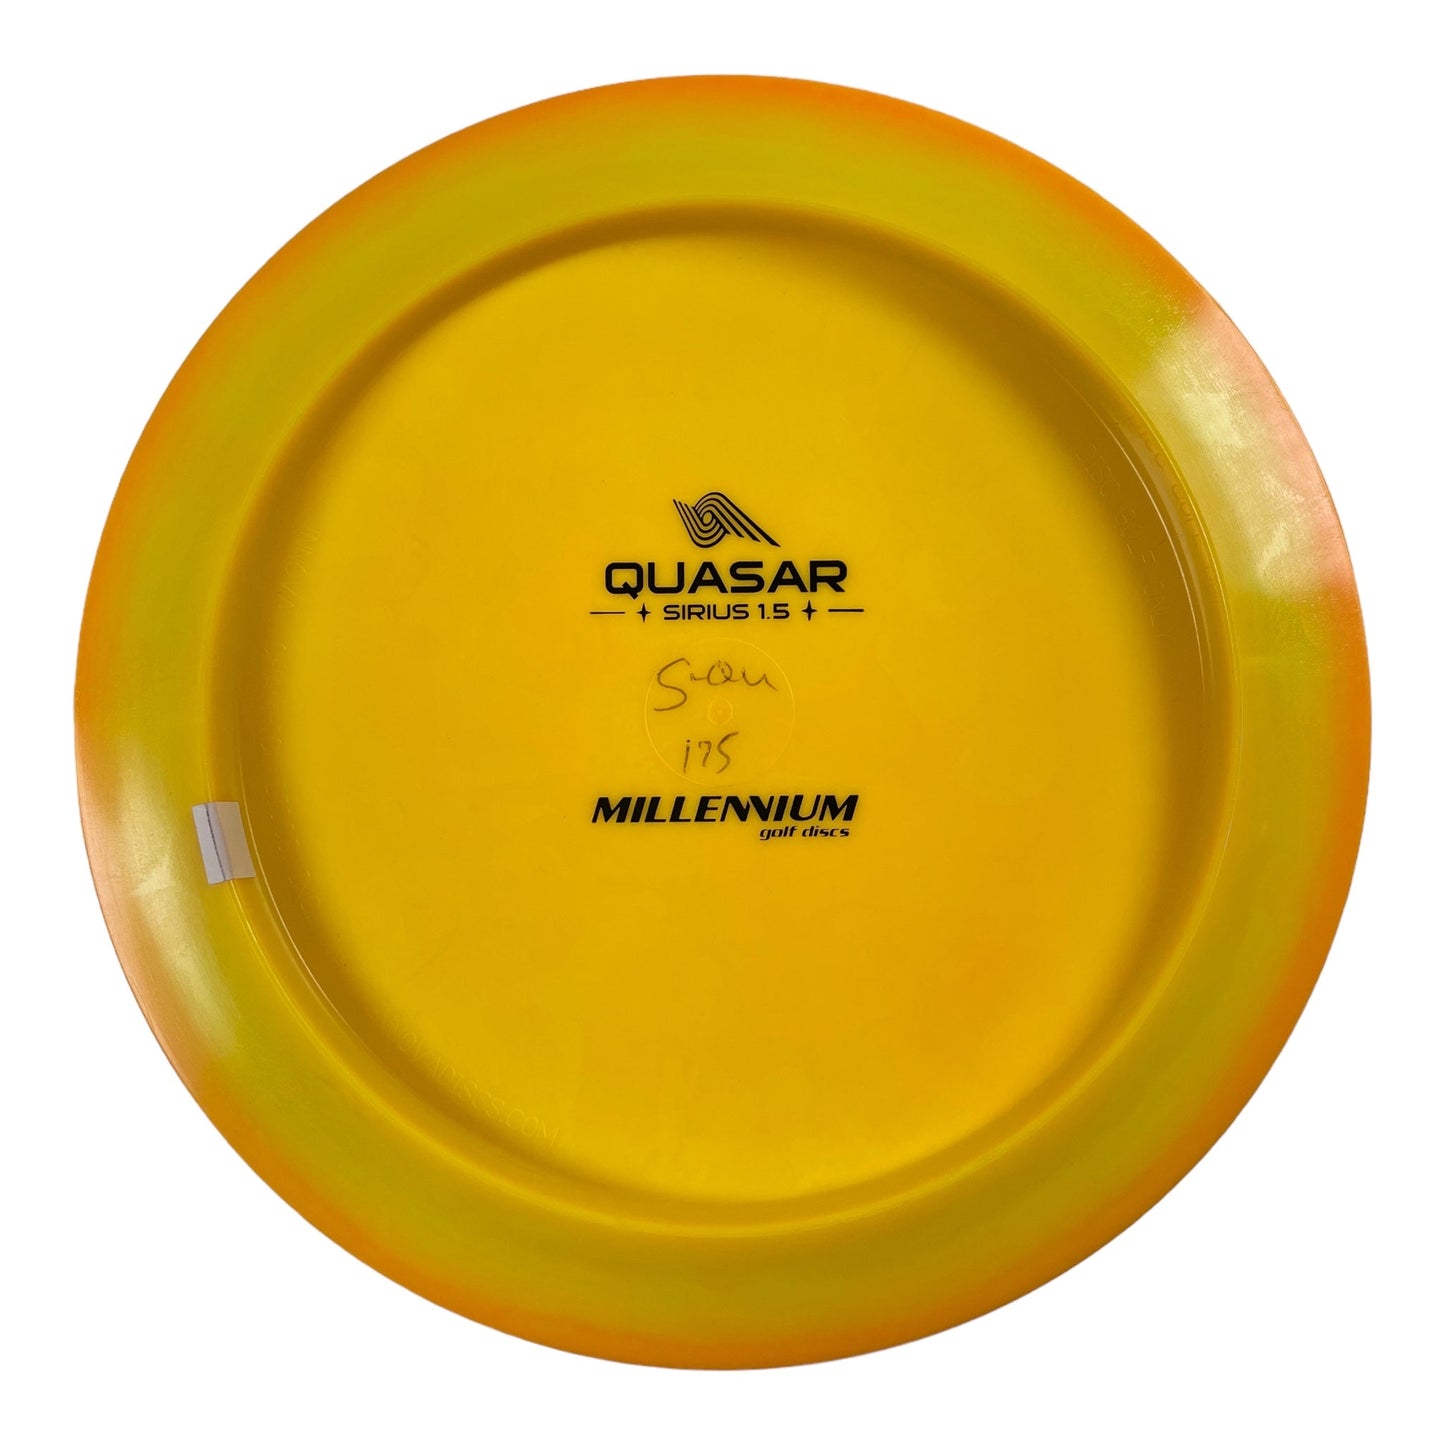 Millennium Golf Discs Quasar | Sirius | Orange/Black 175g Disc Golf